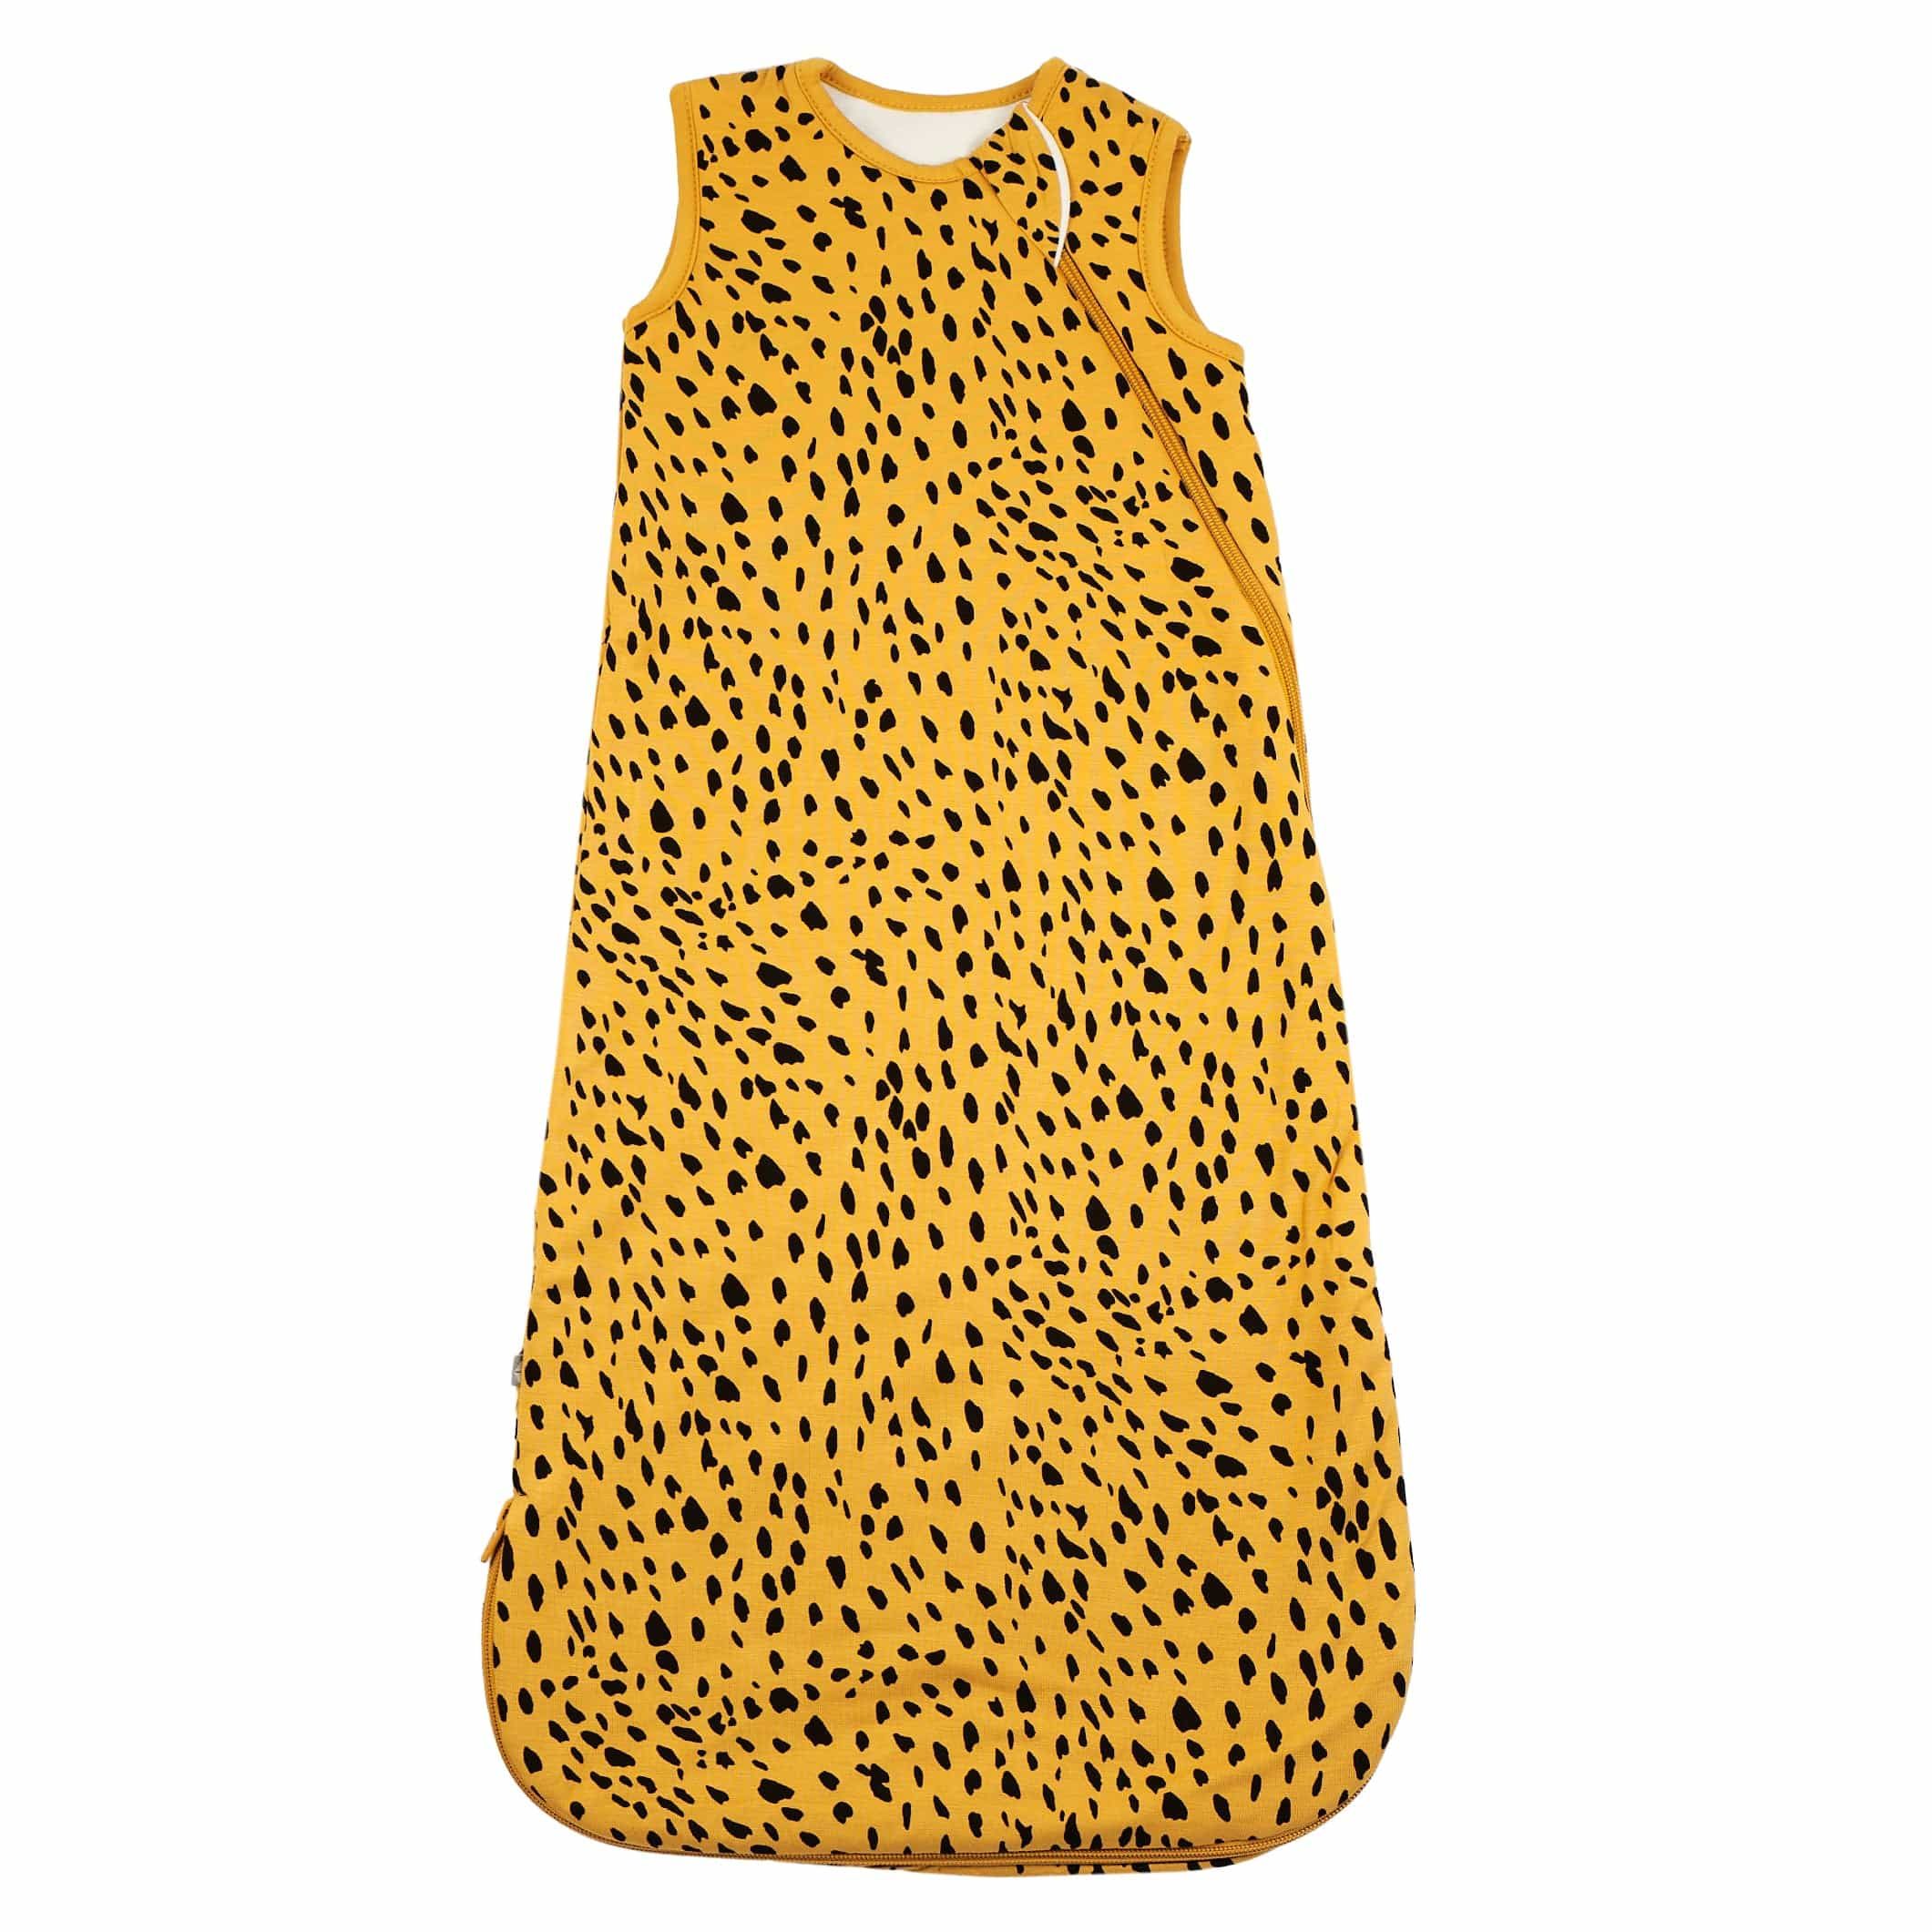 Sleep Bag in Marigold Cheetah 1.0 | Kyte BABY